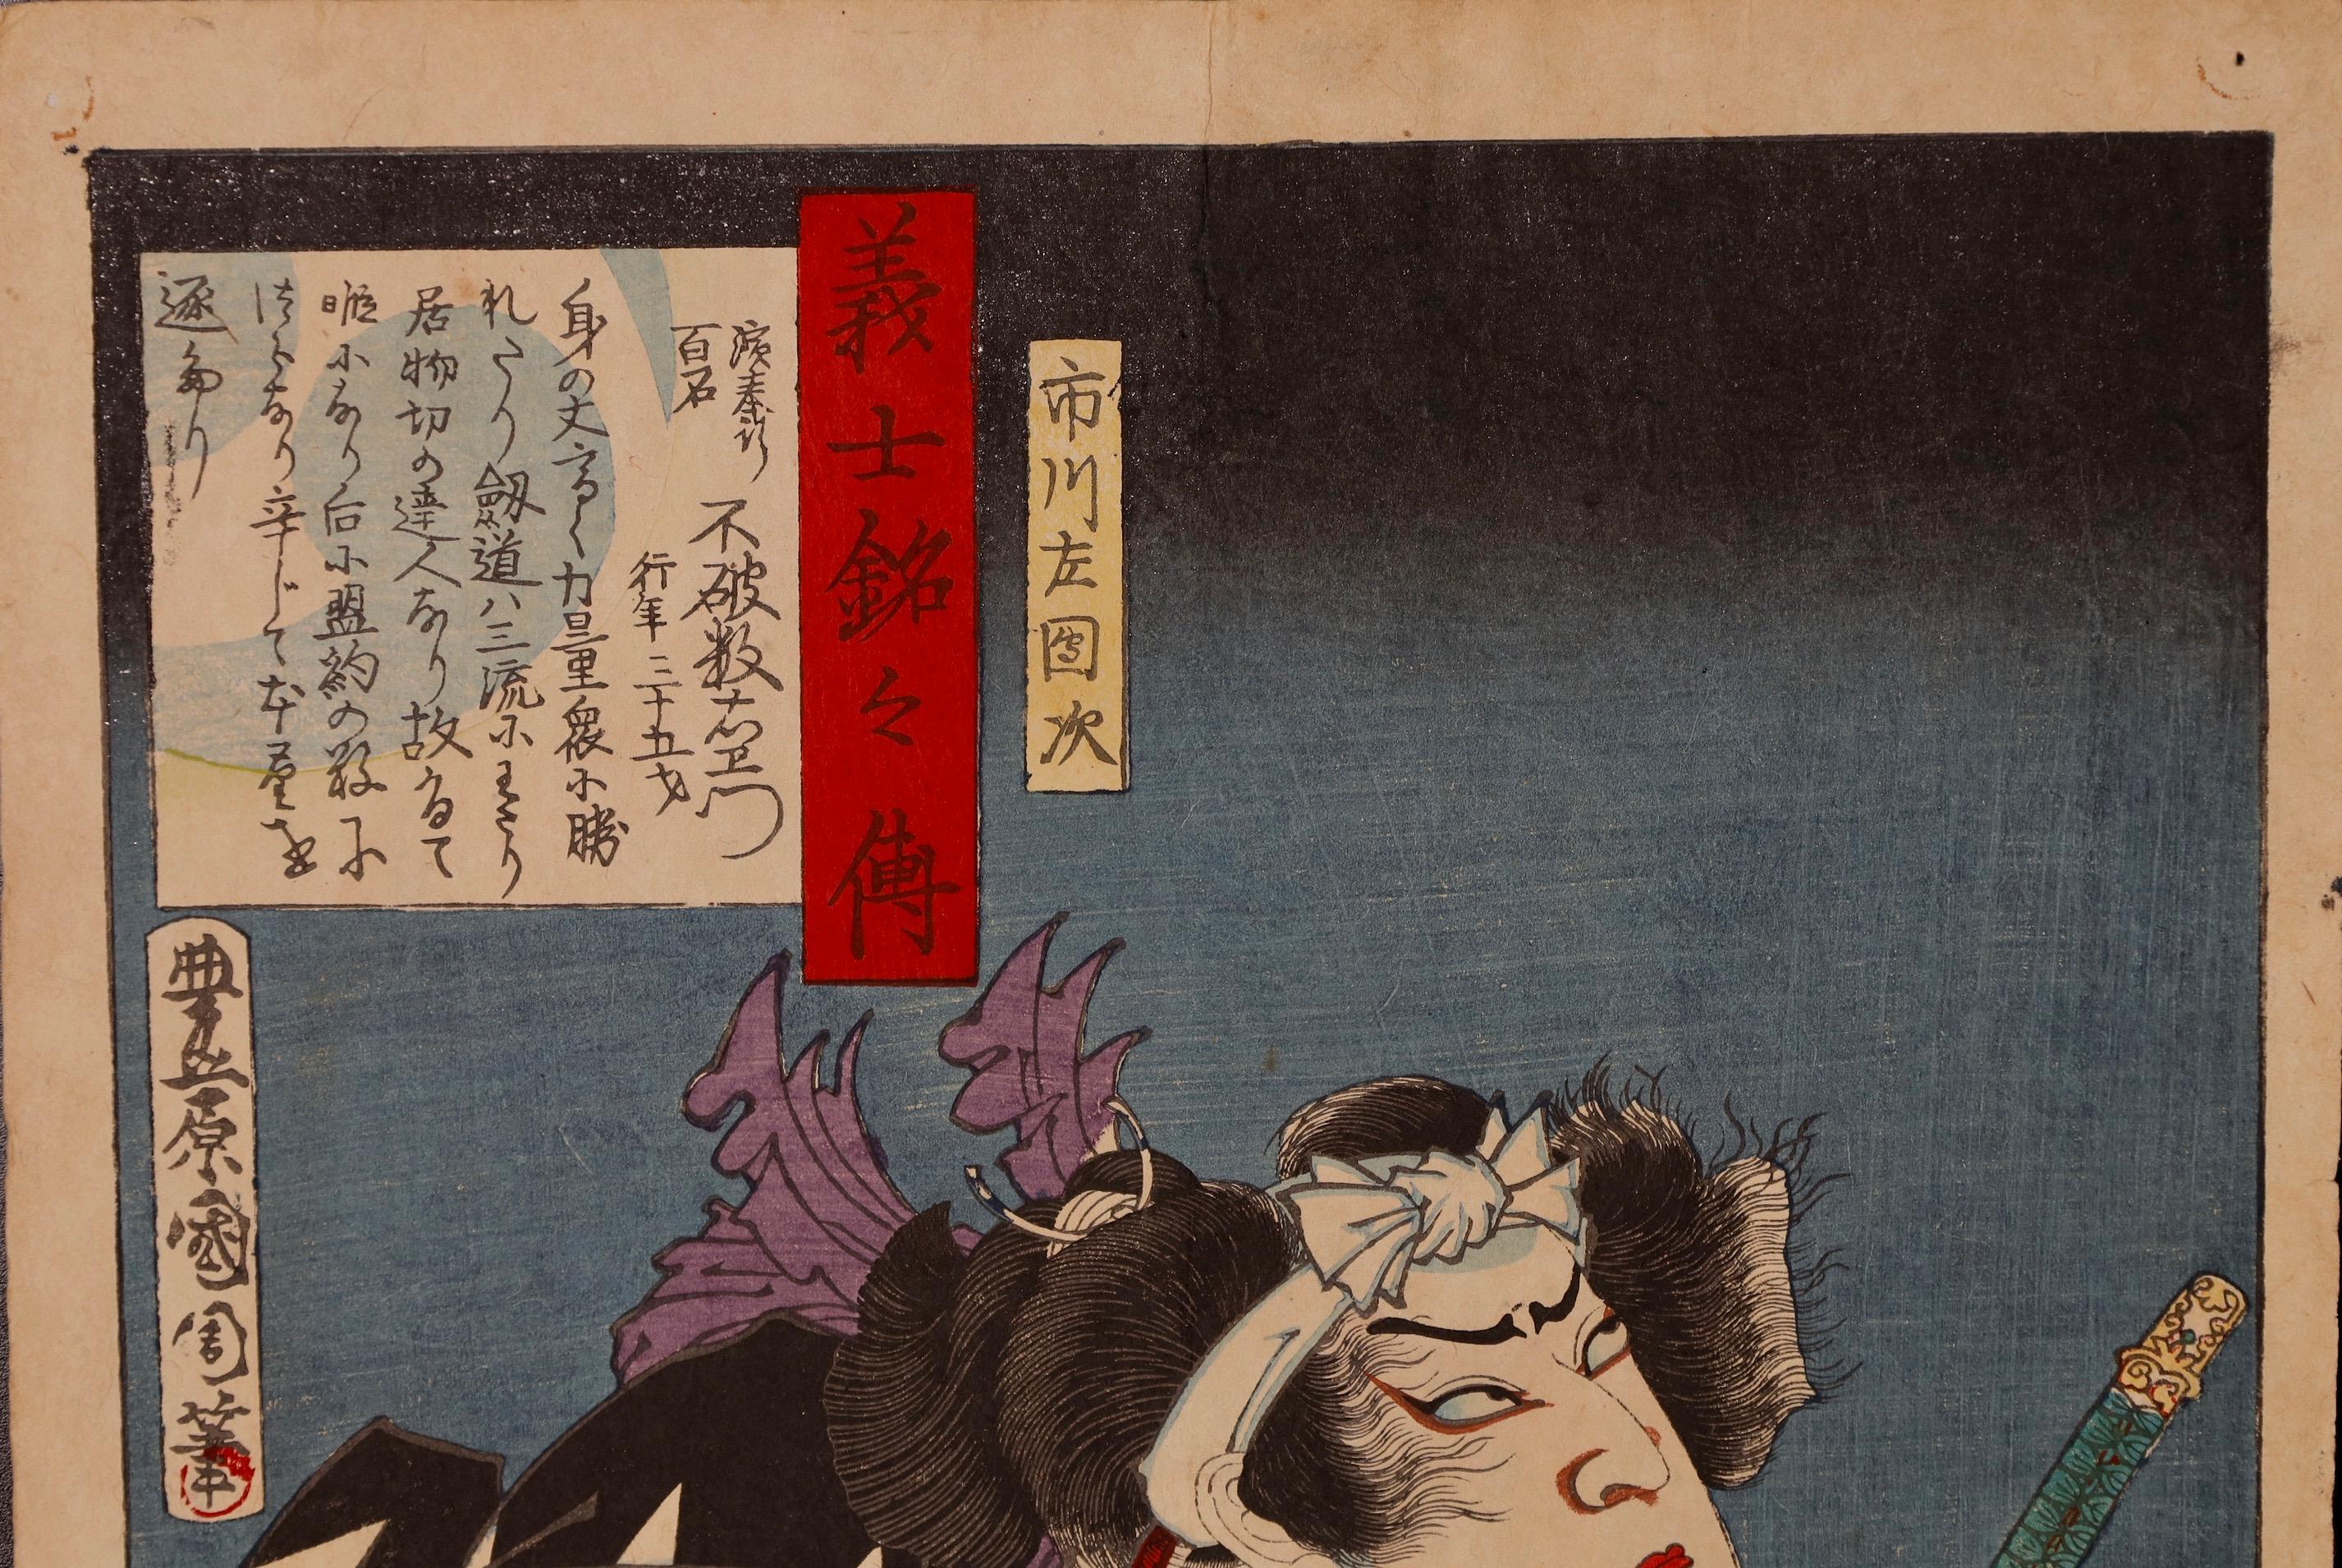 19th Century Japanese Ukiyoe Print by Toyohara Kunichika For Sale